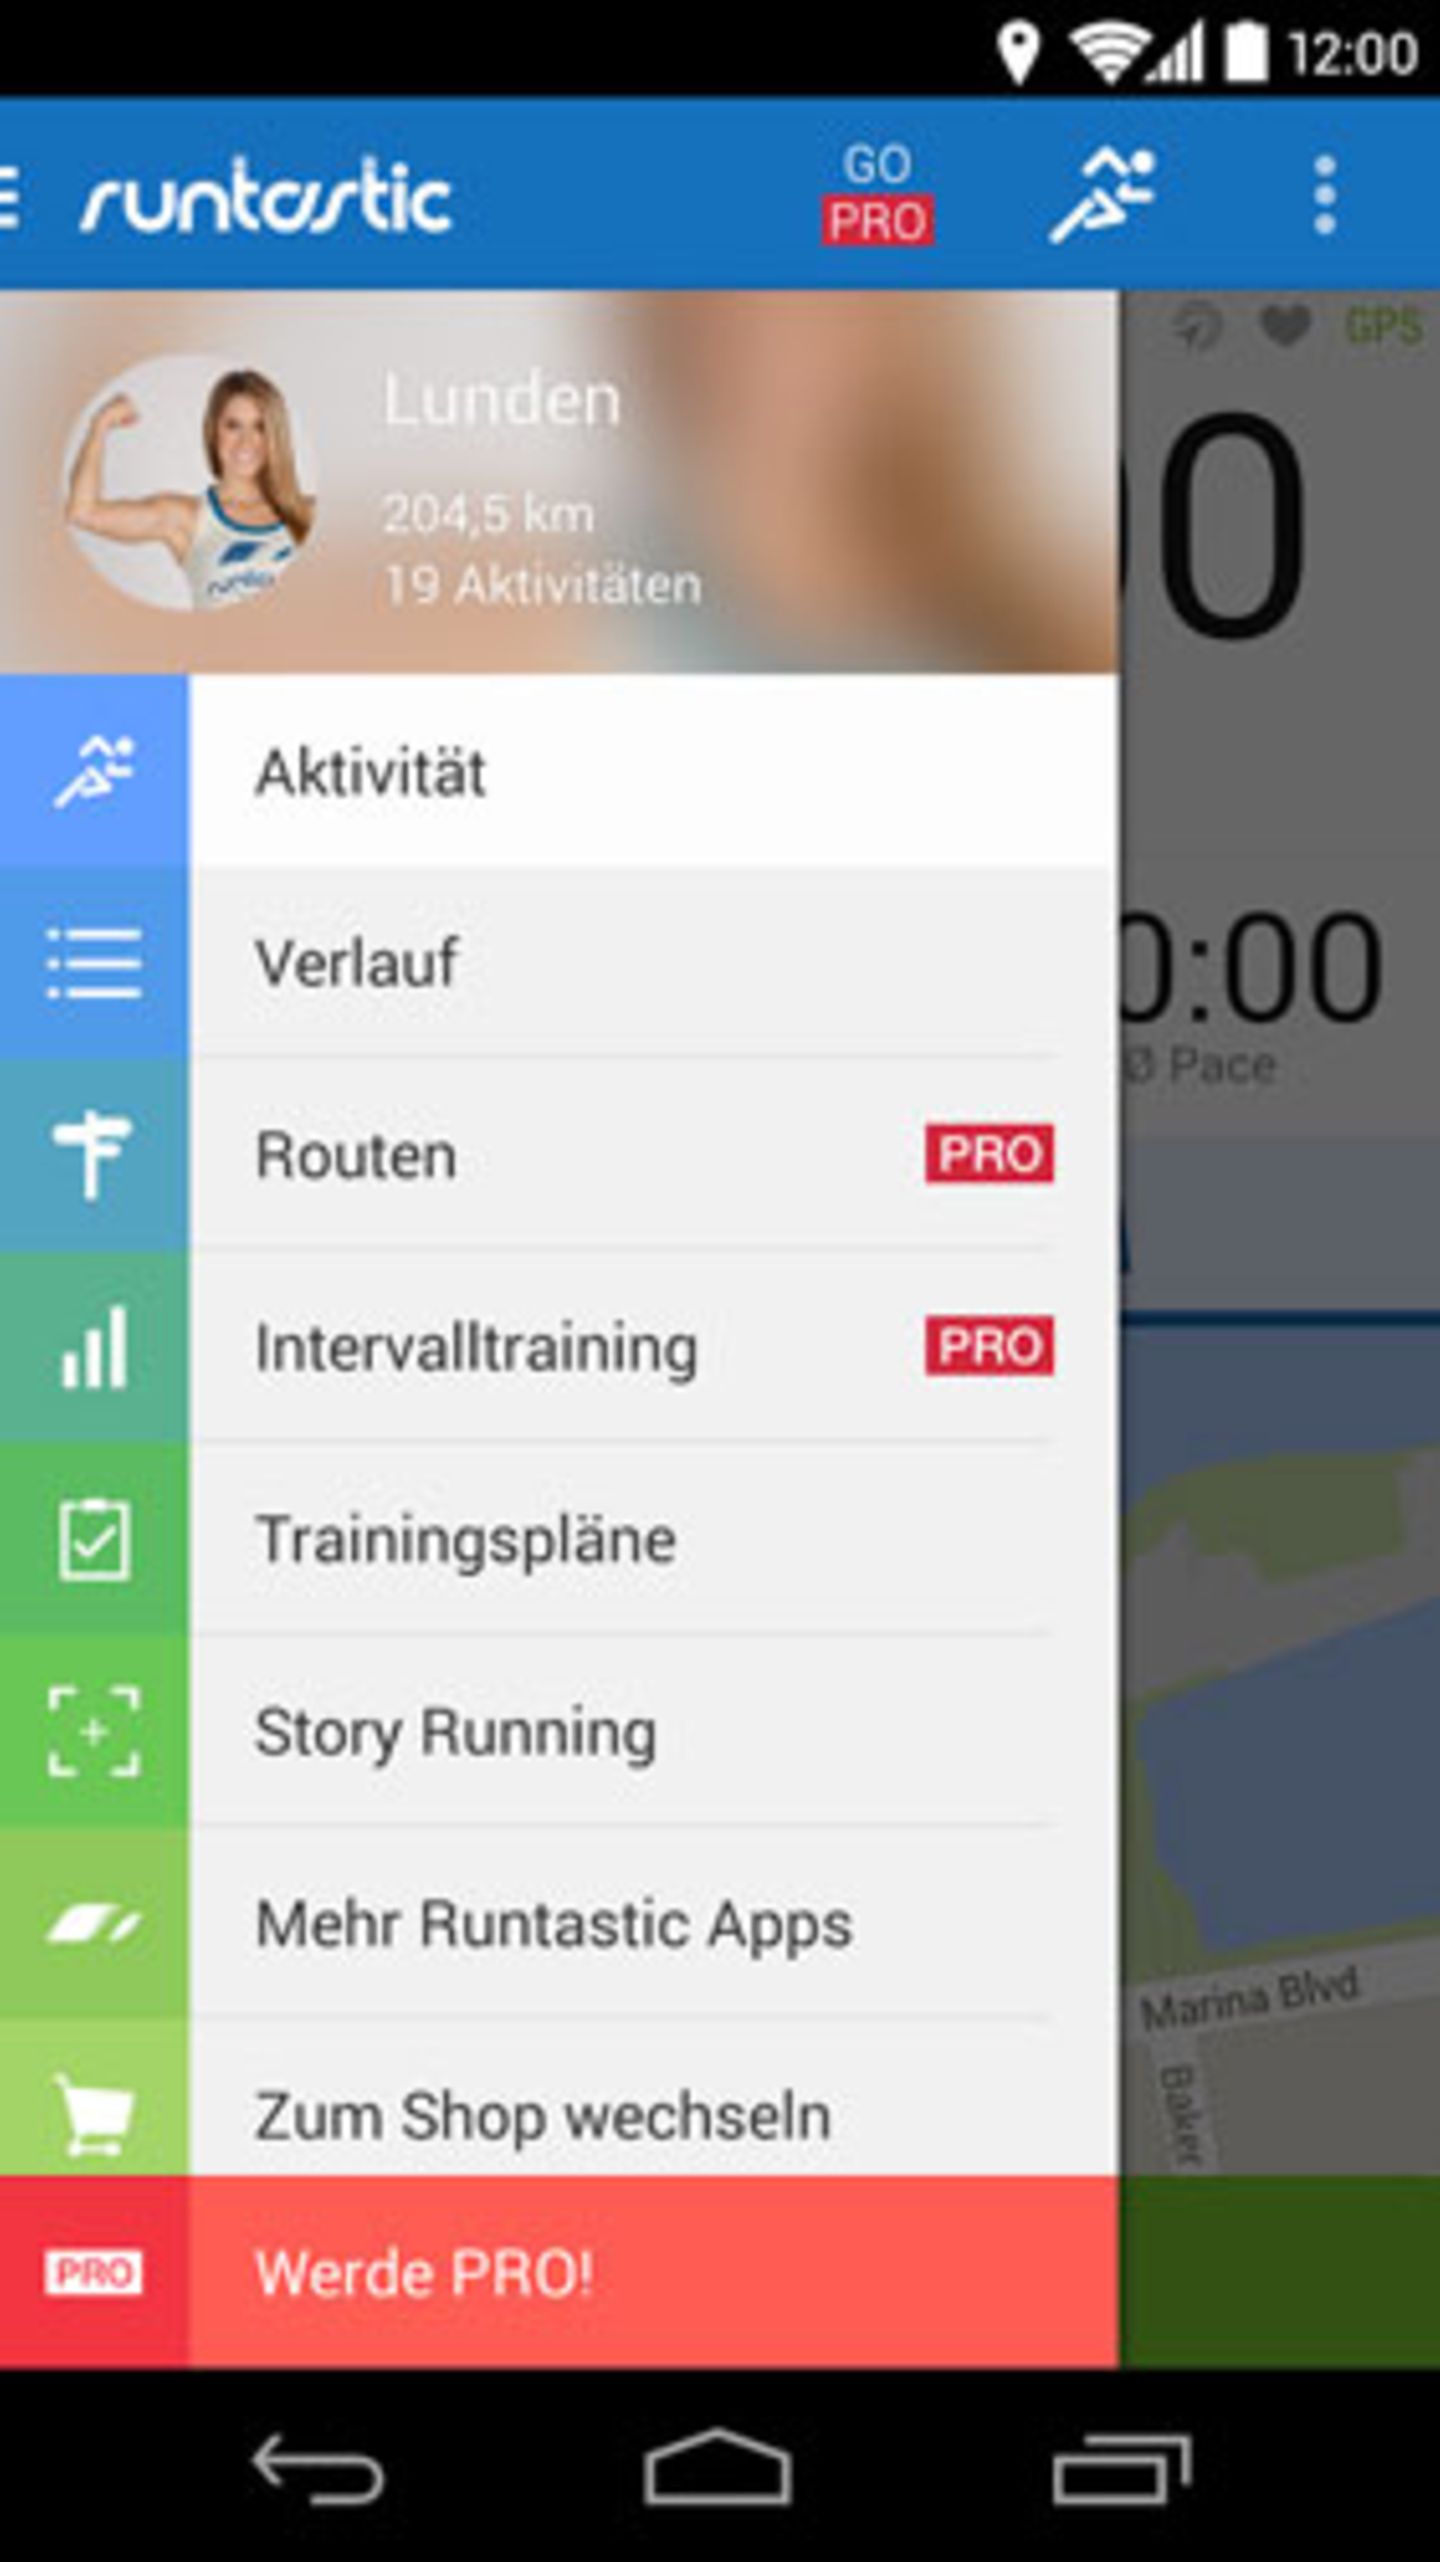 runtastic: Fitness-App für Joggen und andere Ausdauersportarten